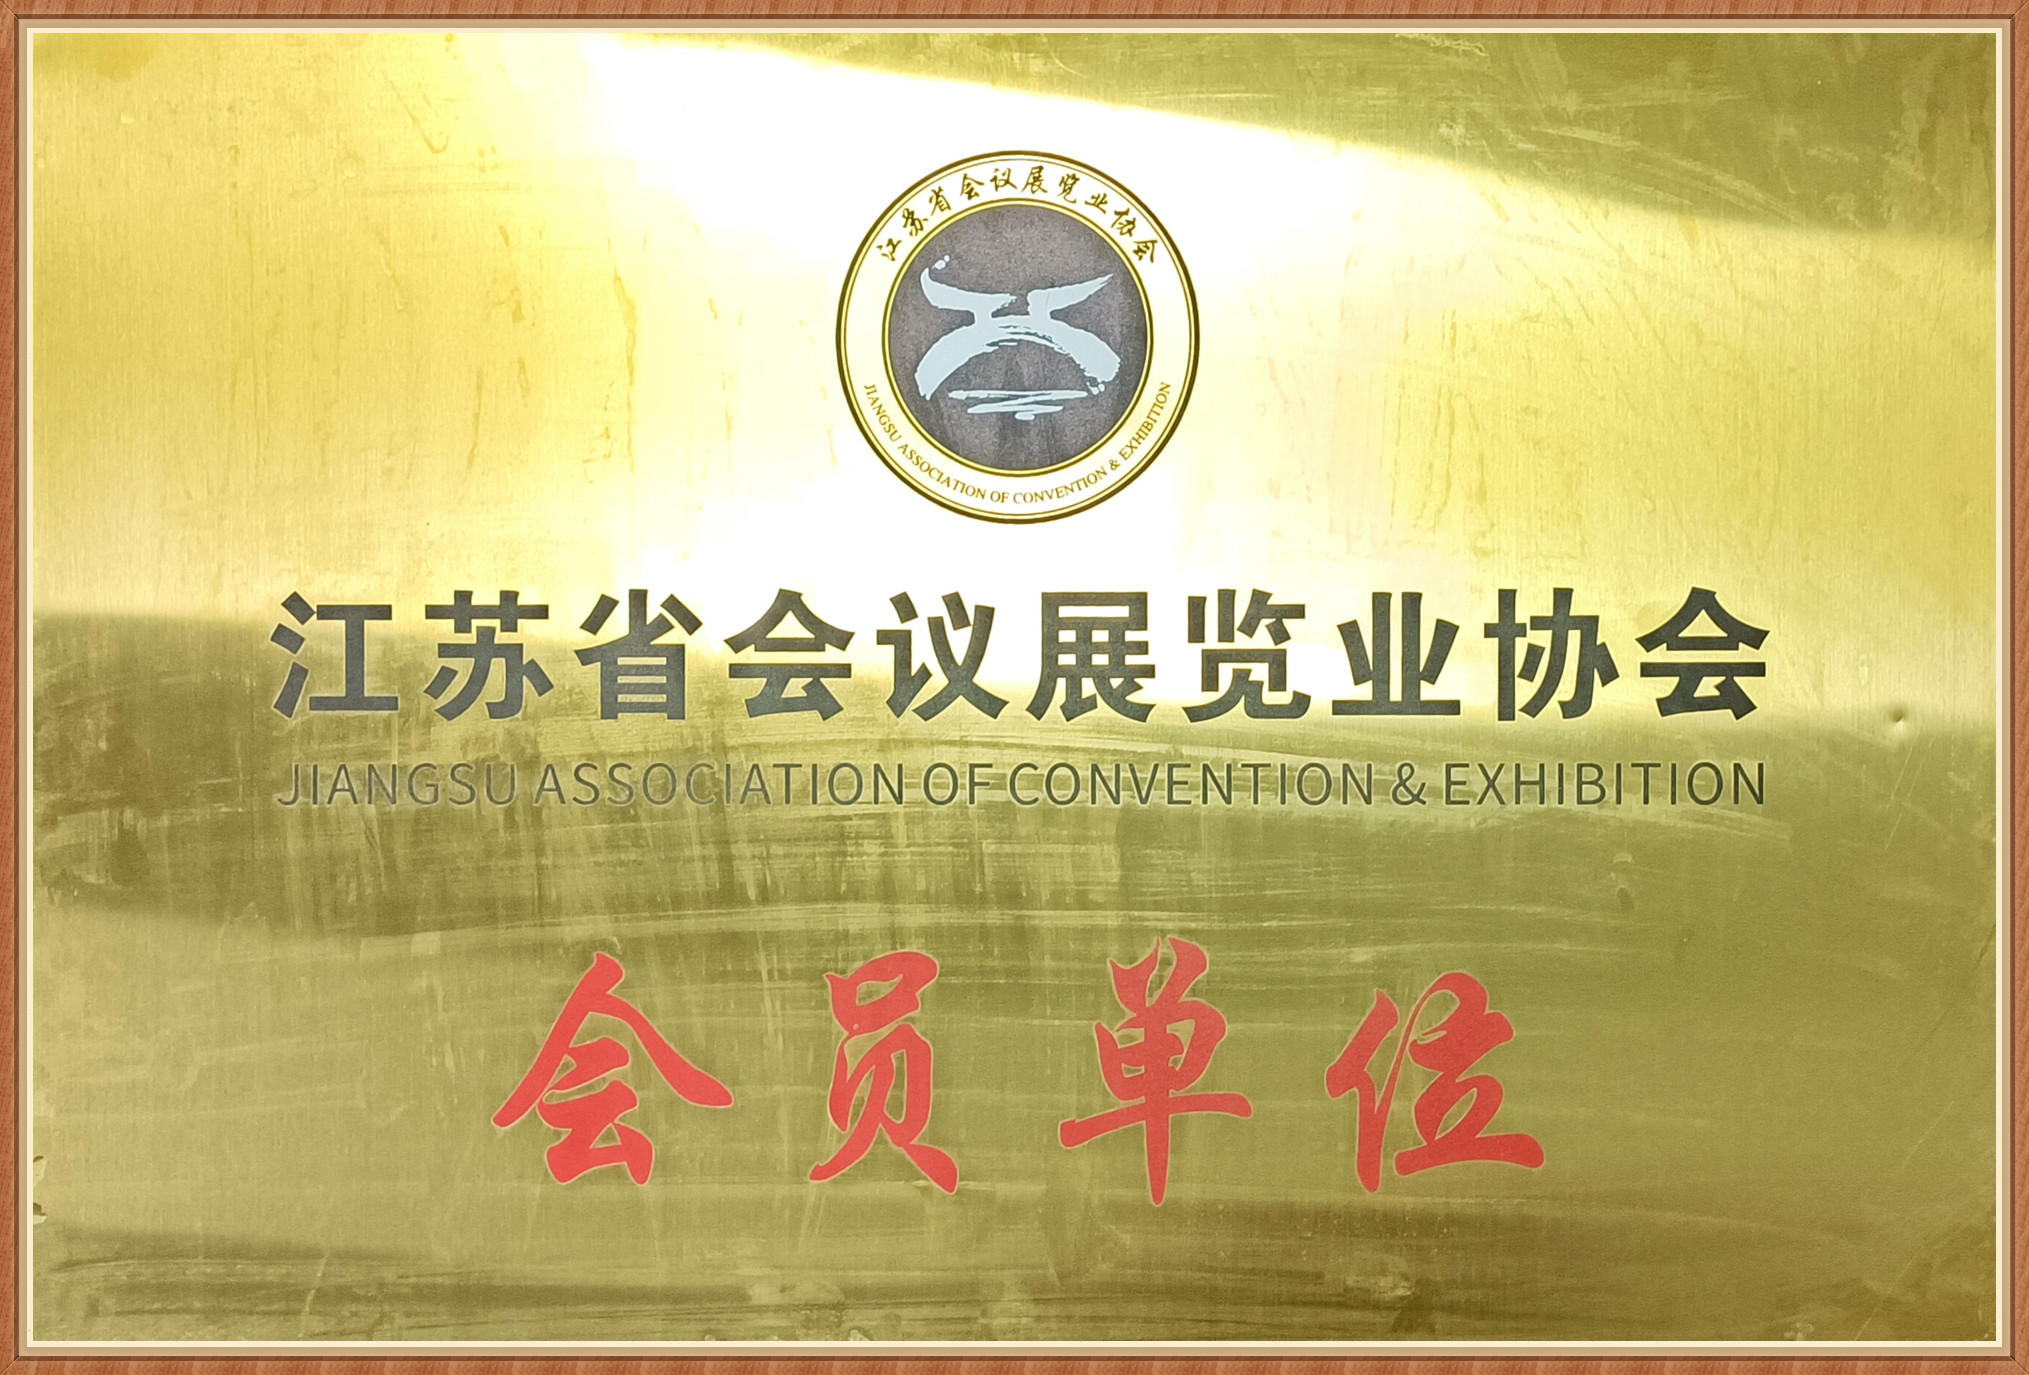 江蘇省會議展覽業協會會員(yuán)單位